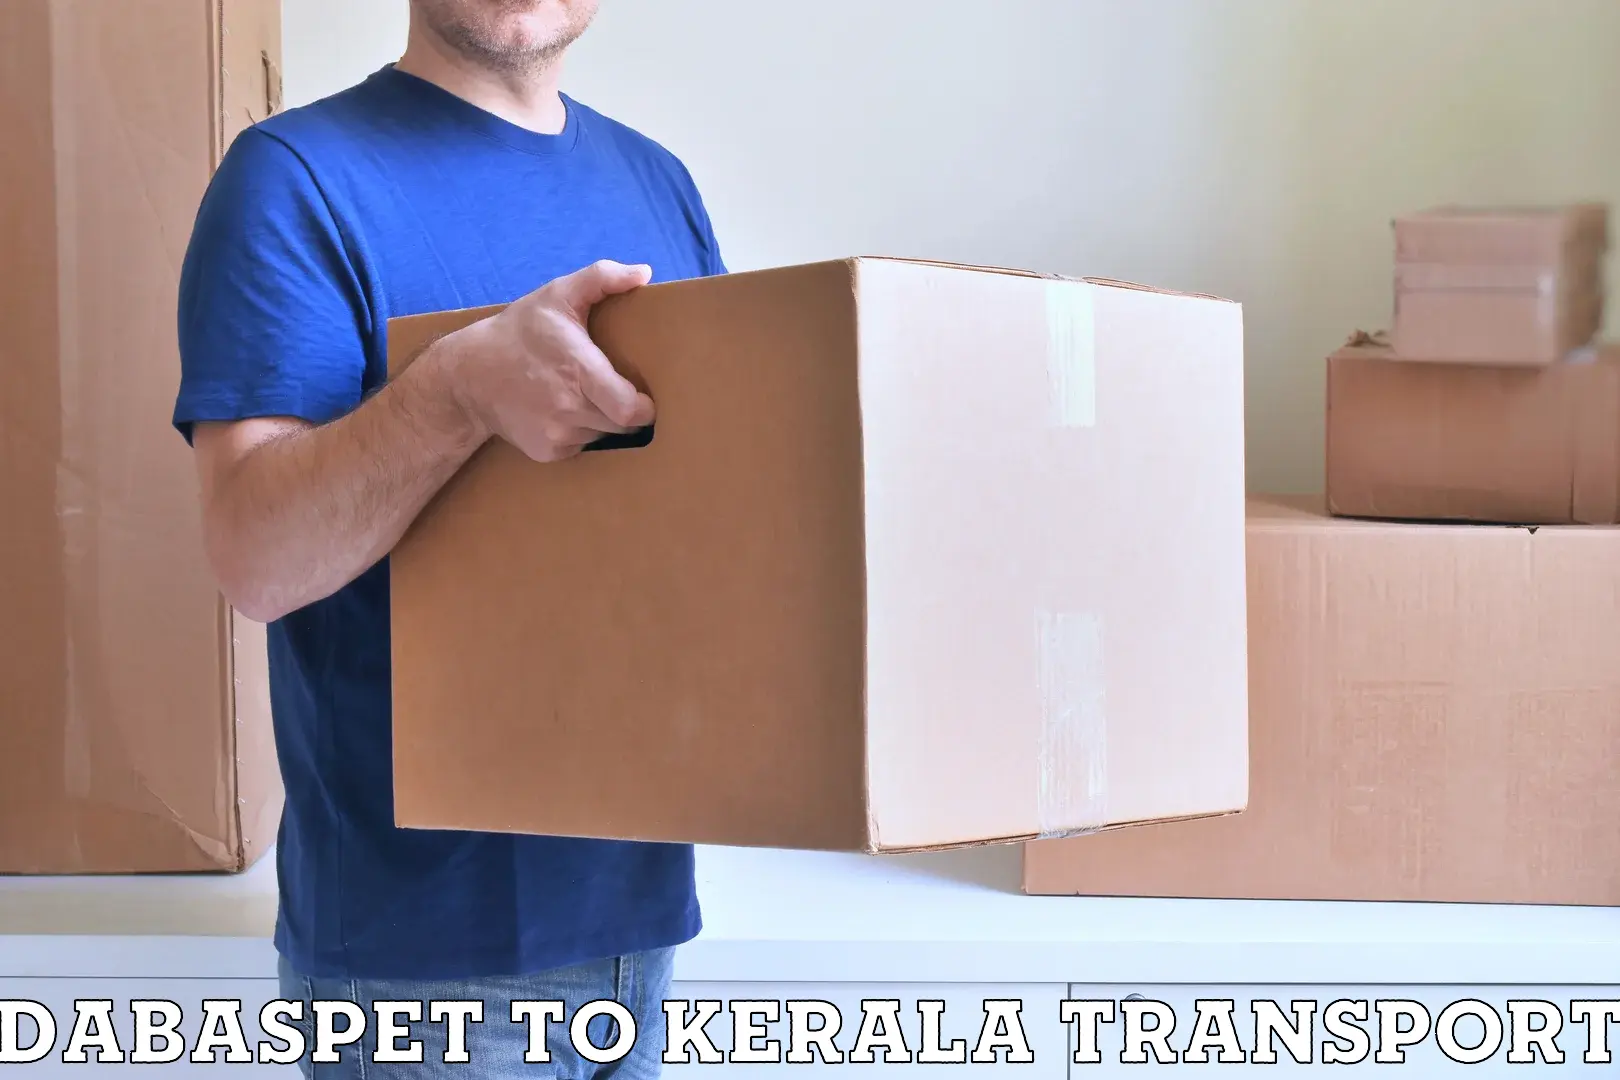 Online transport service Dabaspet to Kothamangalam